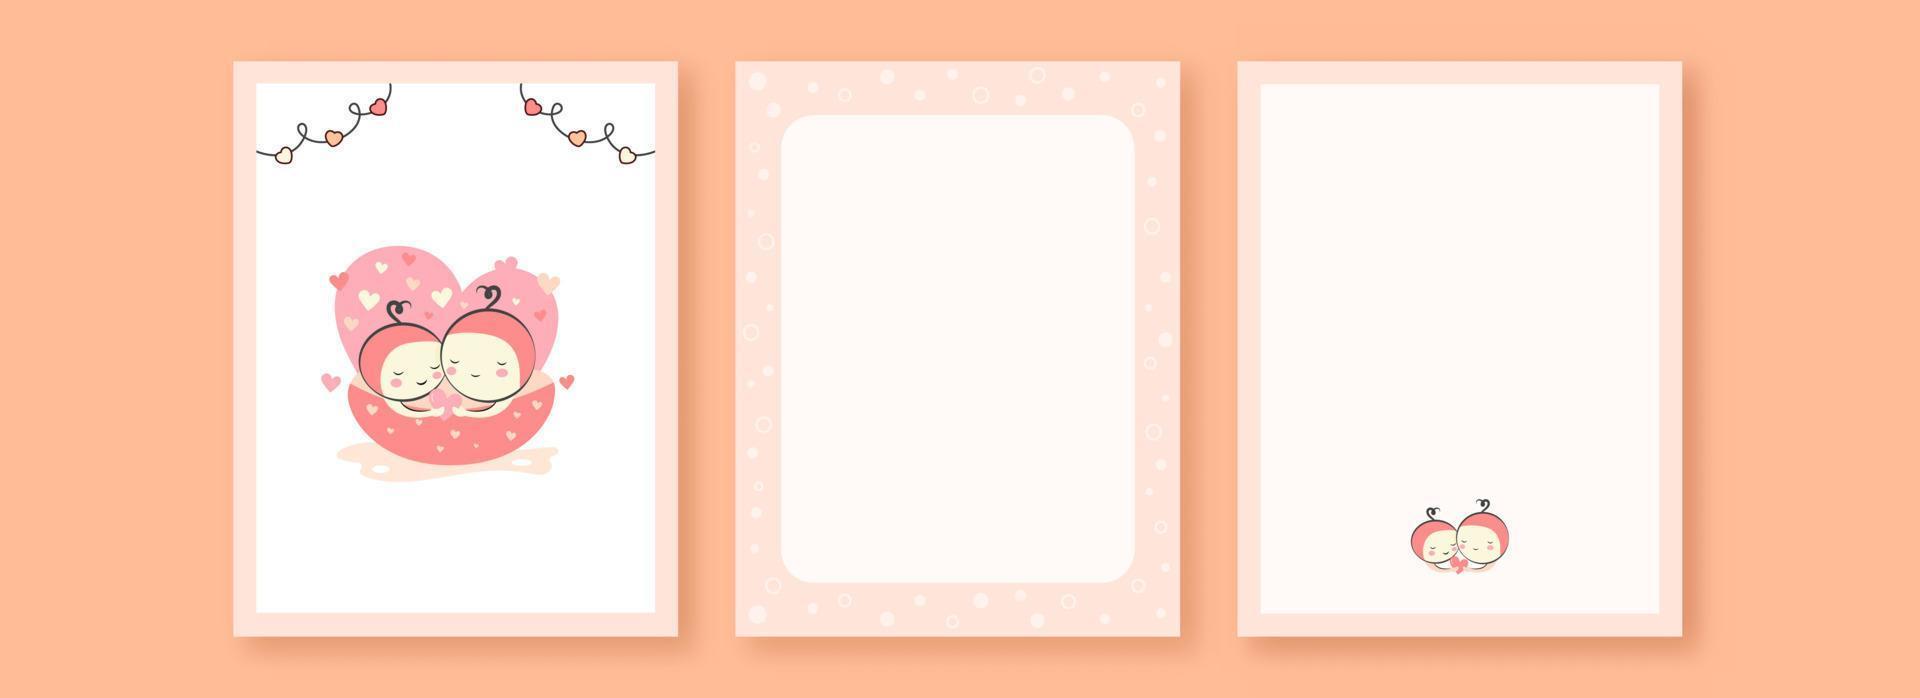 saludo tarjeta plantillas diseño con linda bebés personaje dentro bañera y espacio para texto. vector